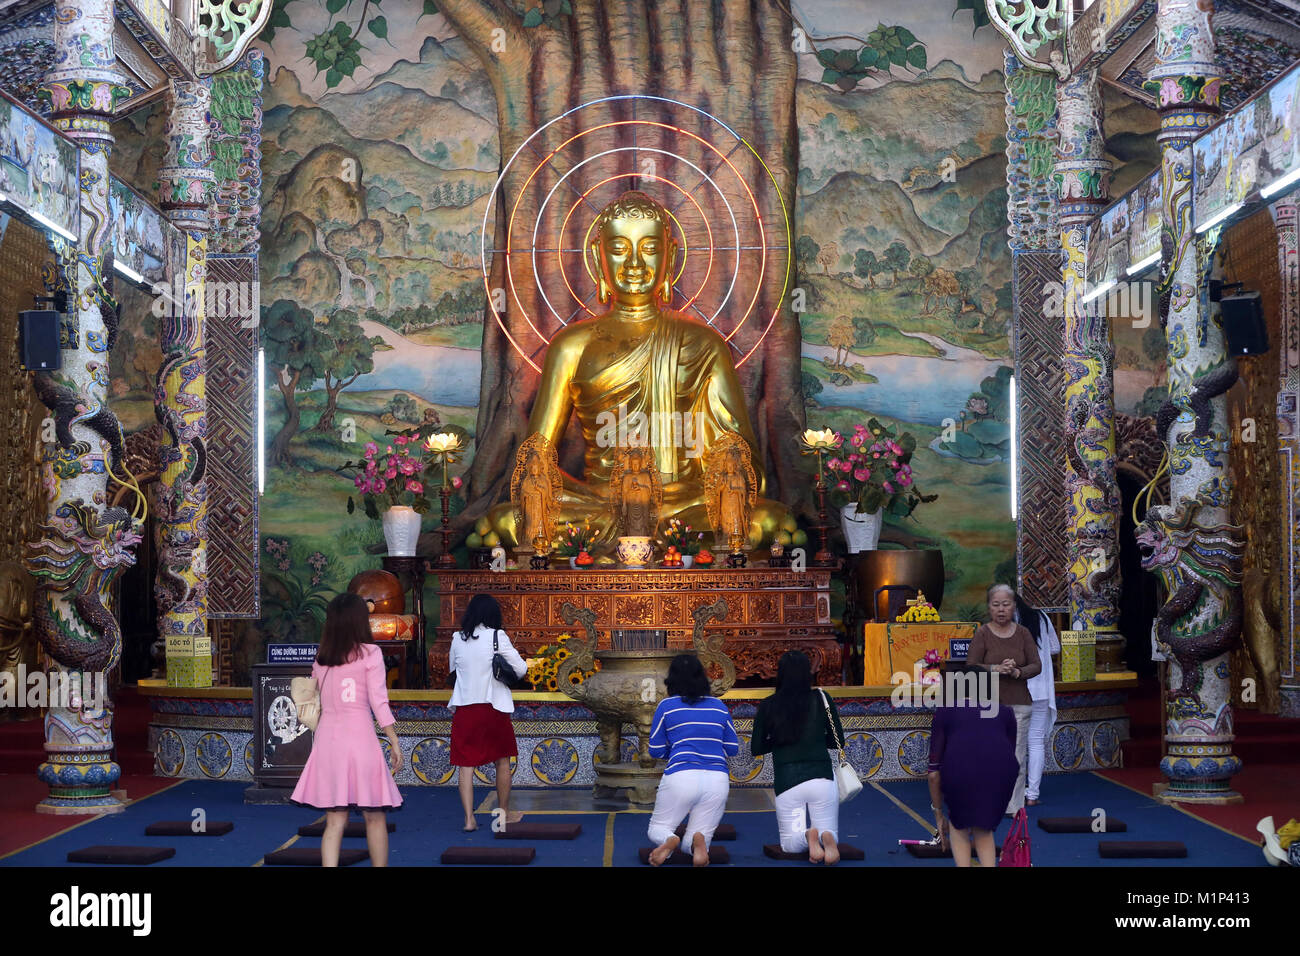 Udienza golden Buddha figura nella sala principale e i fedeli di pregare per il Buddha, Linh Phuoc Pagoda di Dalat, Vietnam, Indocina, Asia sud-orientale, Asia Foto Stock